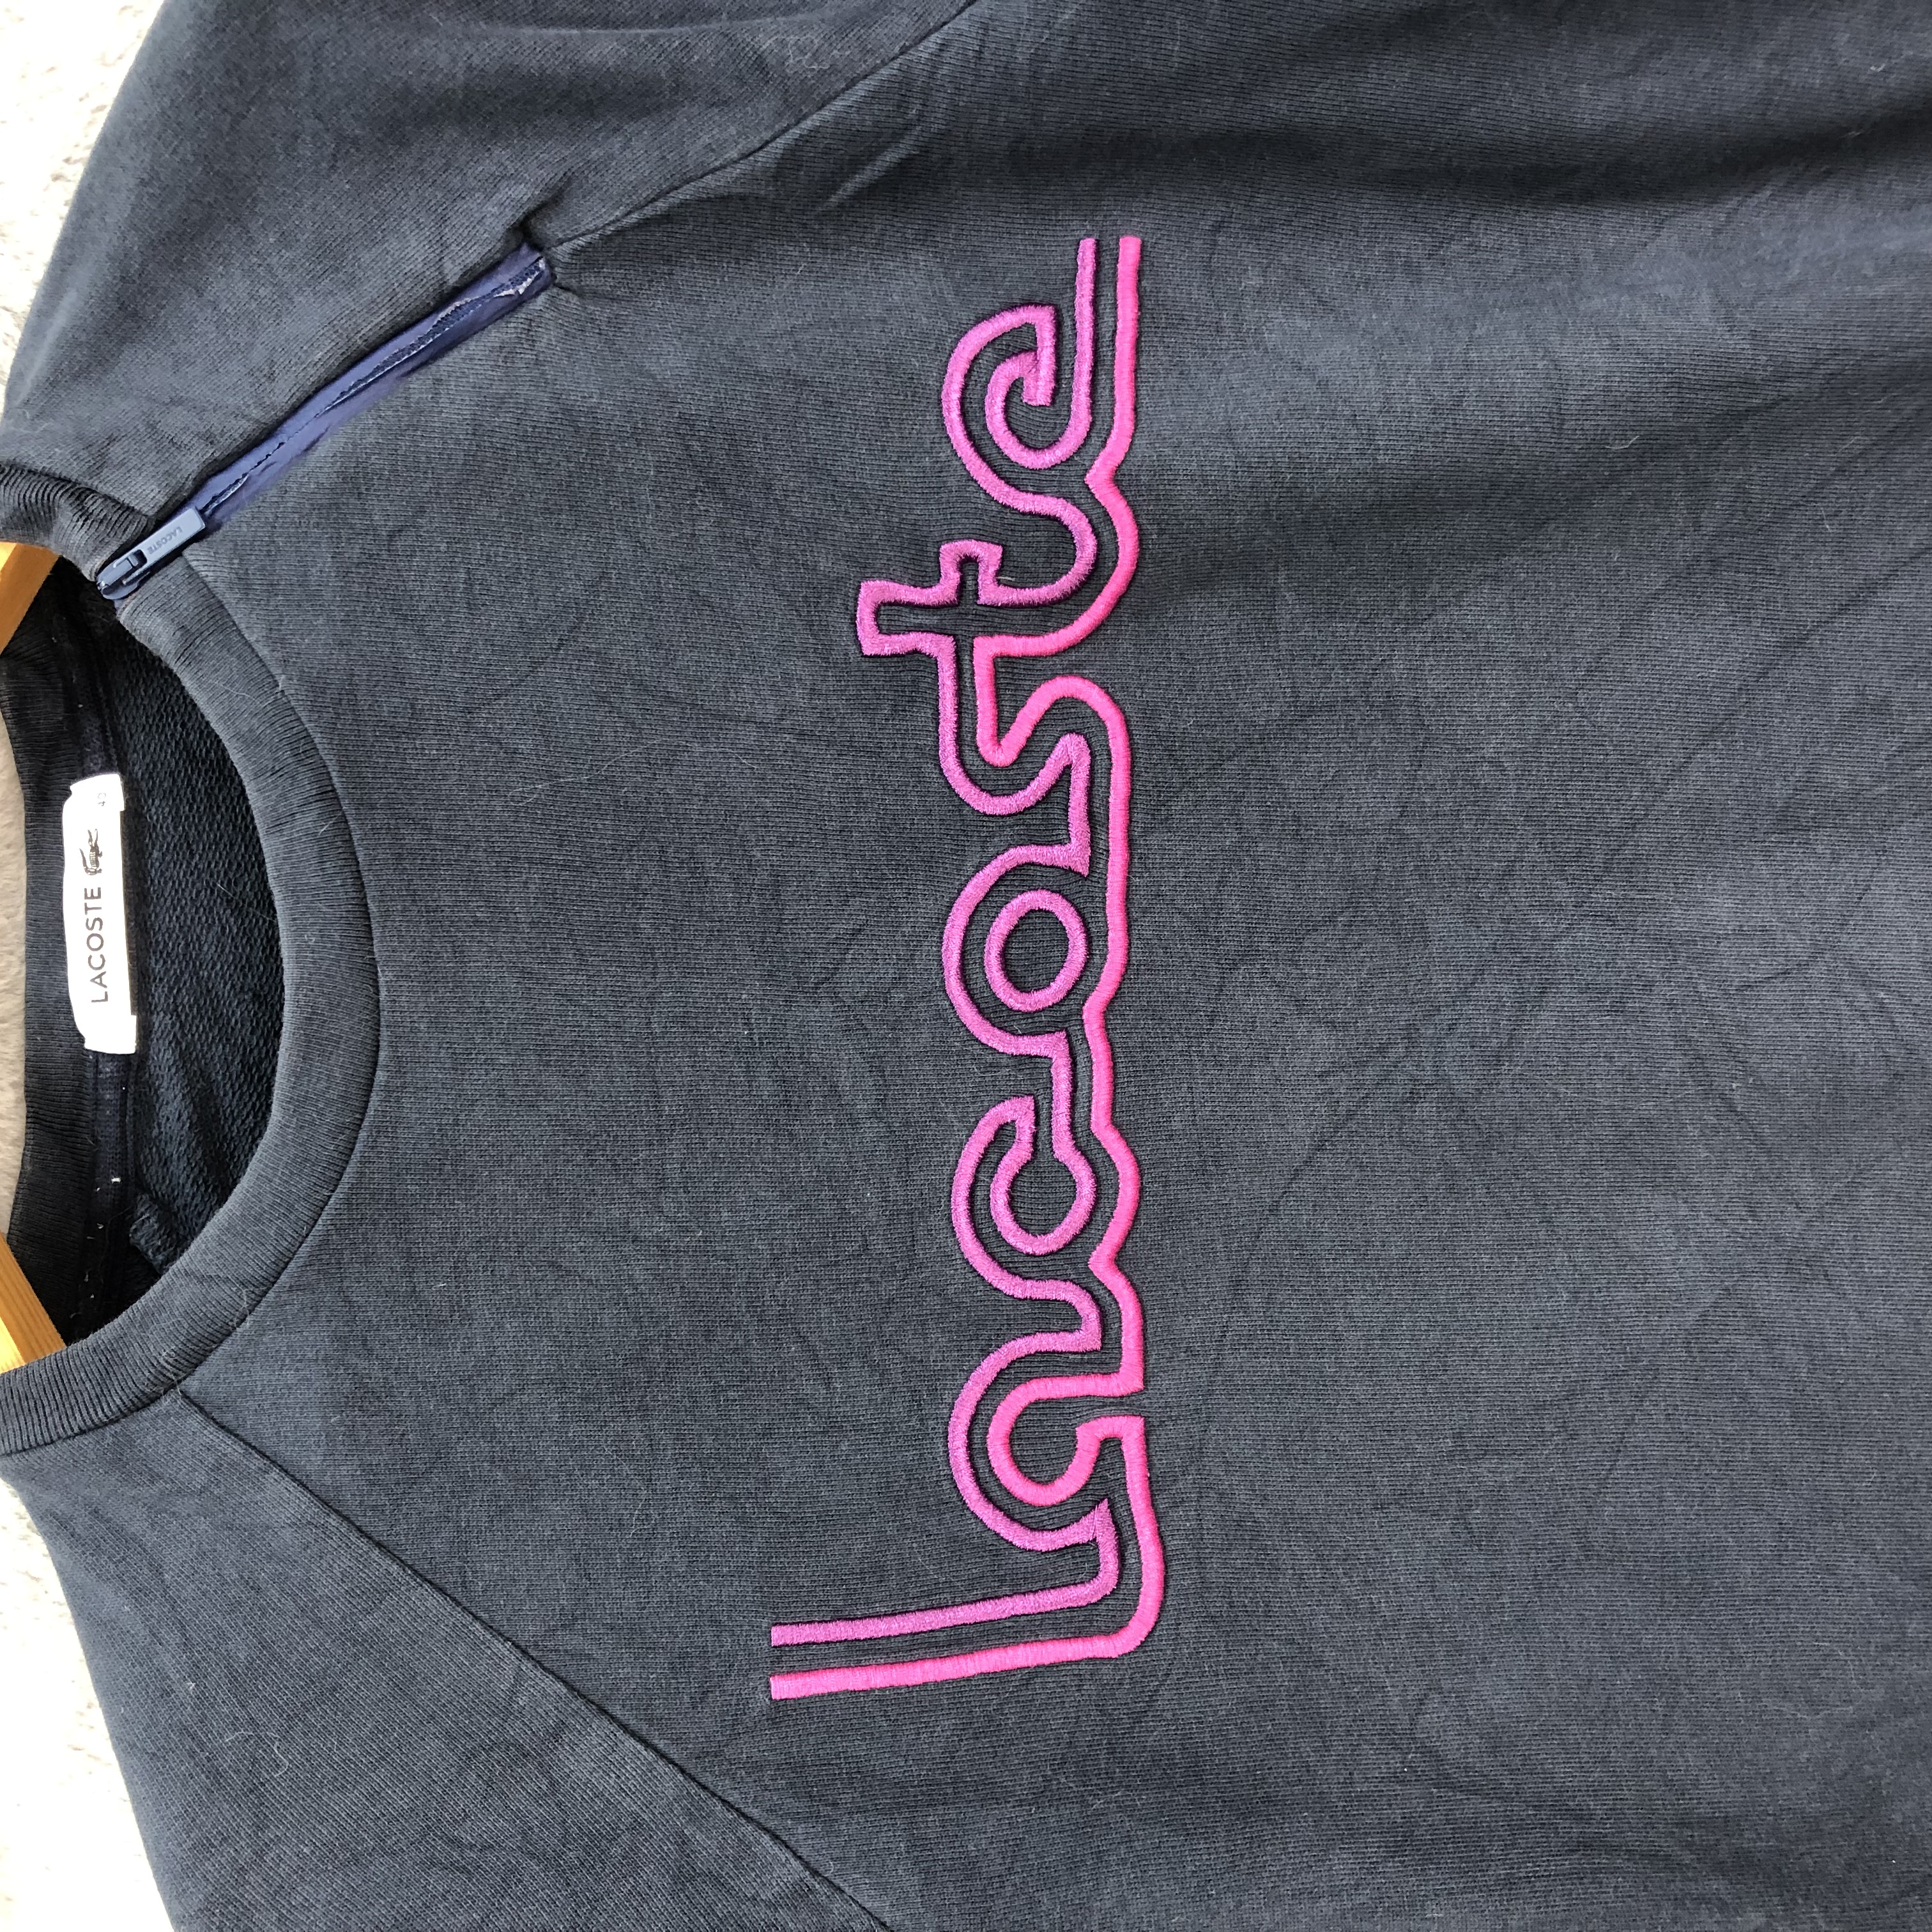 Lacoste Embroidery Big Logo Sweatshirts #5019-34 - 3